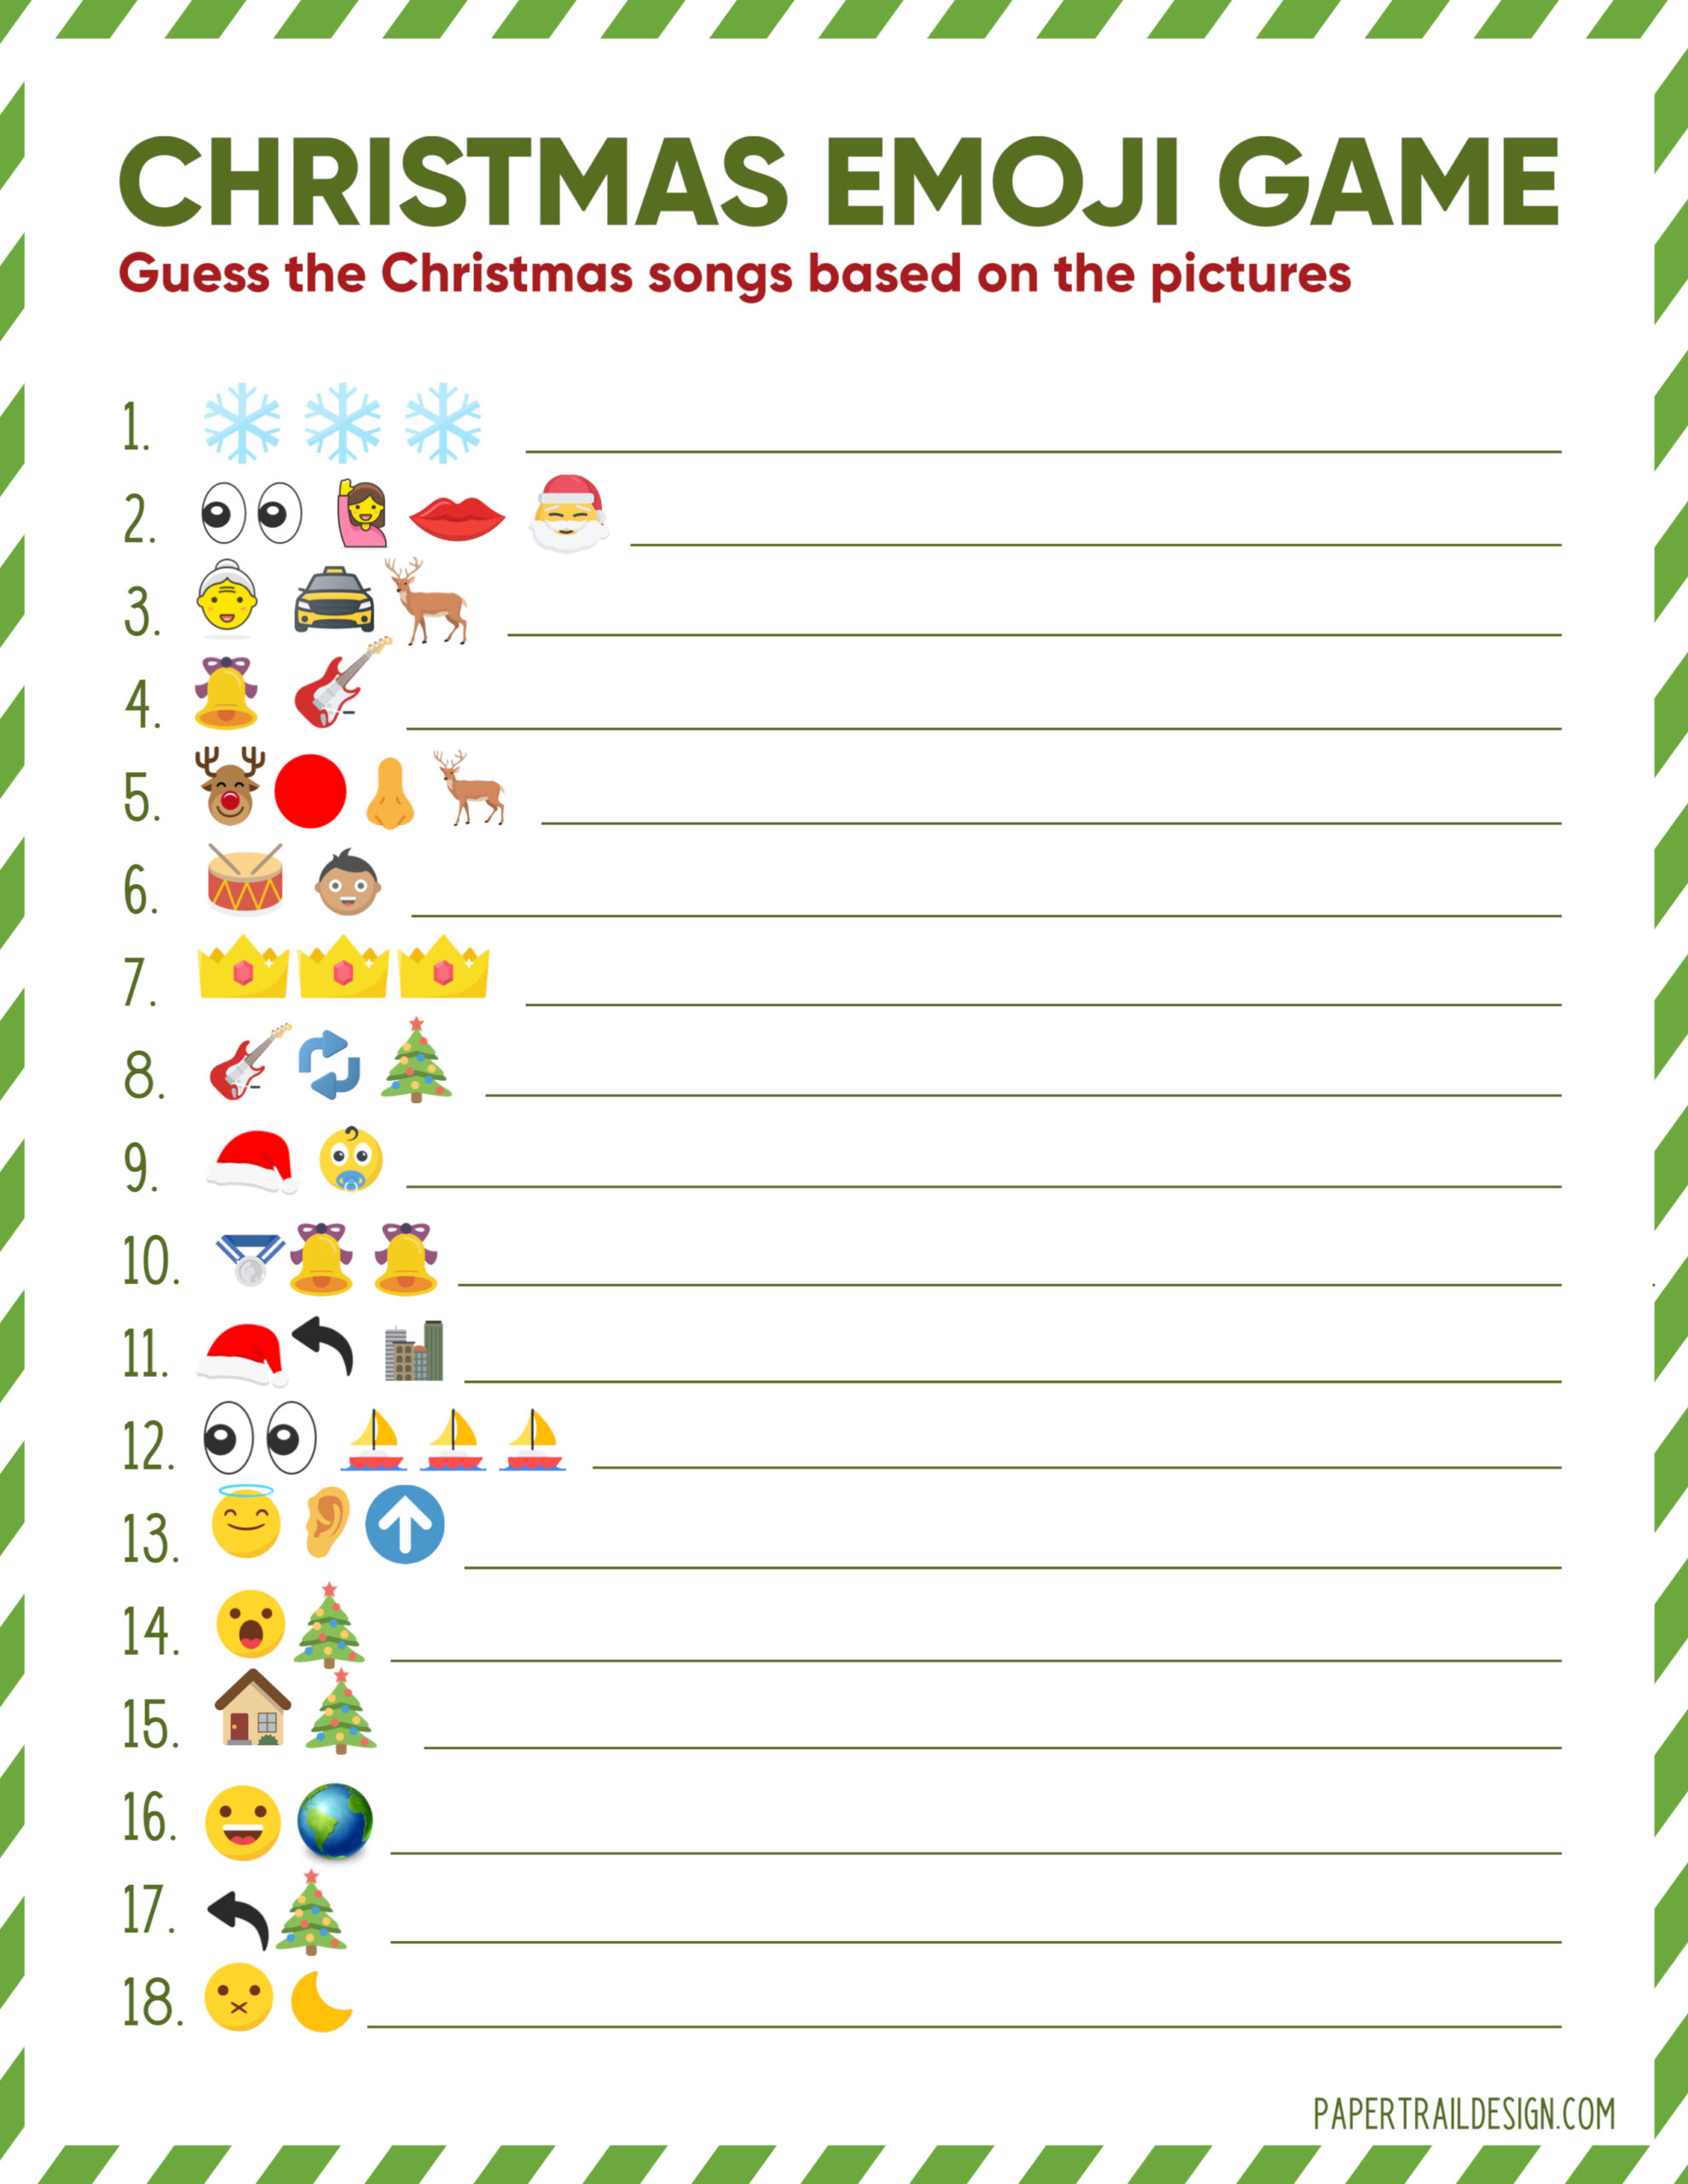 christmas-emoji-game-printable-customize-and-print